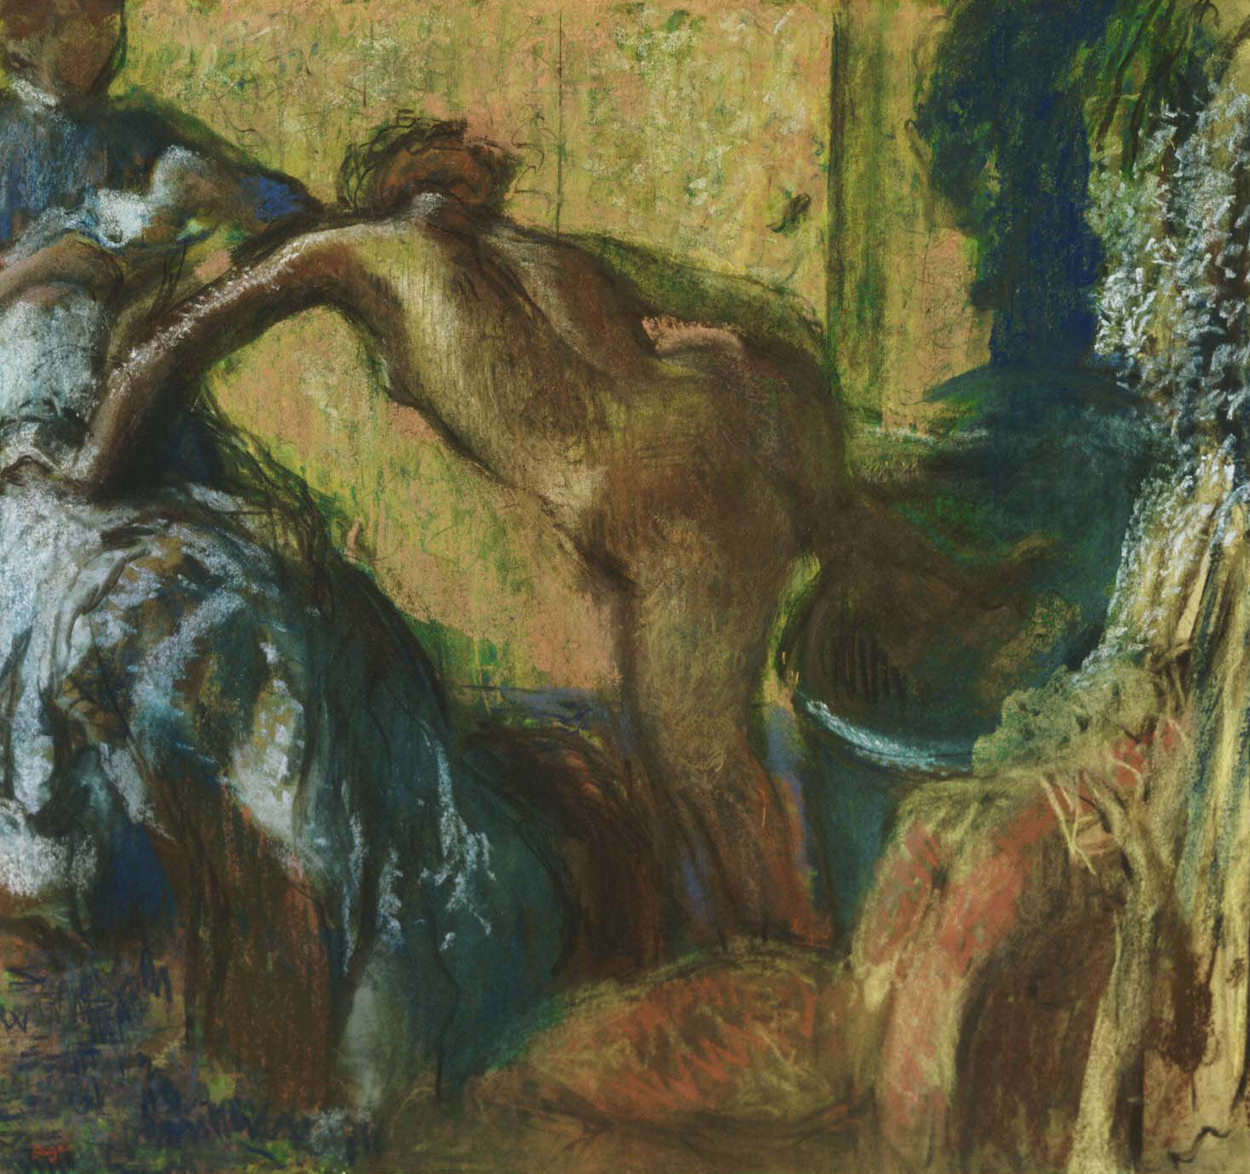 목욕 후에 by Edgar Degas - 약 1895년경 - 33.13 x 30.5 인치 